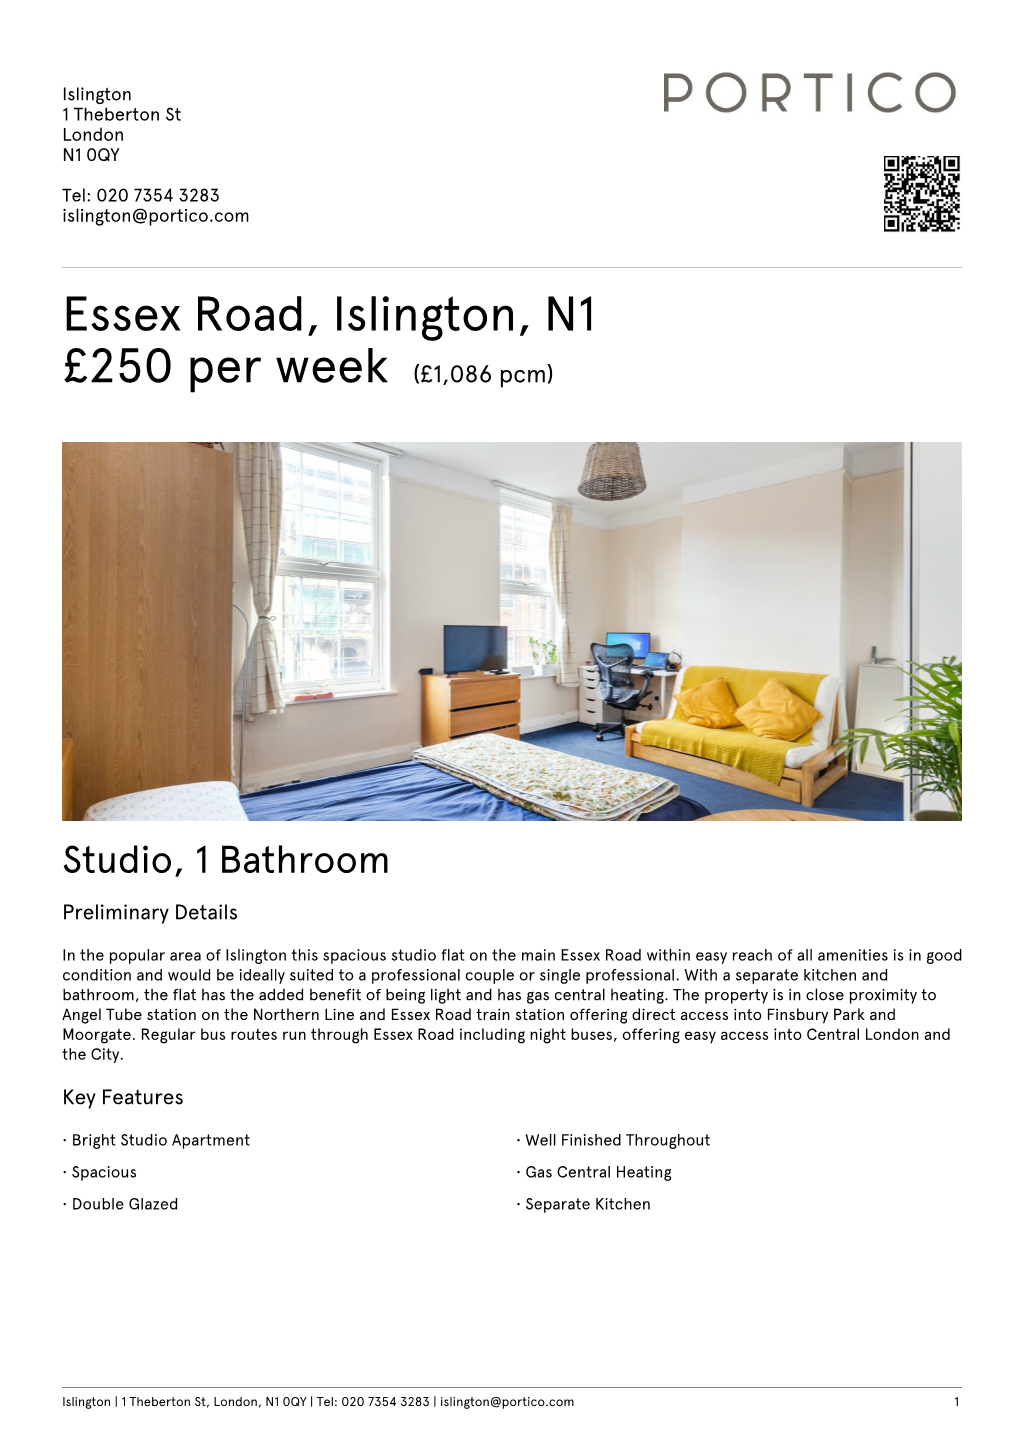 Essex Road, Islington, N1 £250 Per Week